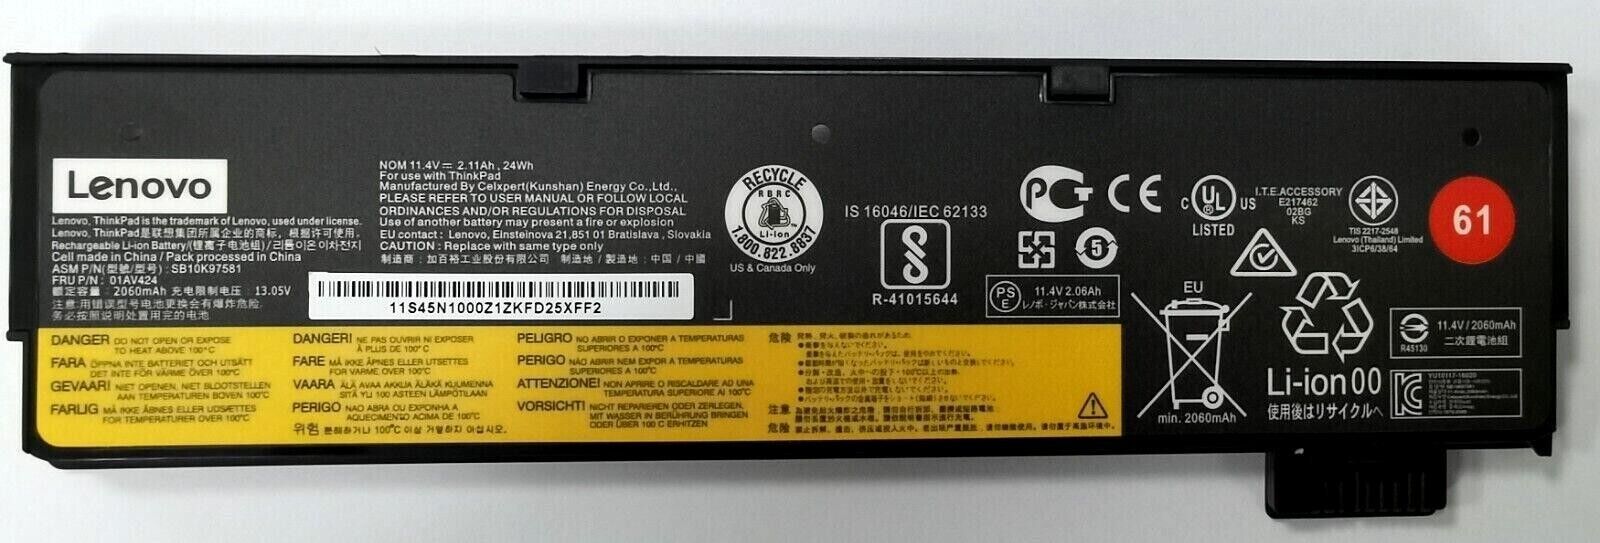 Genuine 01AV425 01AV423 61 24Wh Battery for Lenovo Thinkpad T470 T480 T570 T580